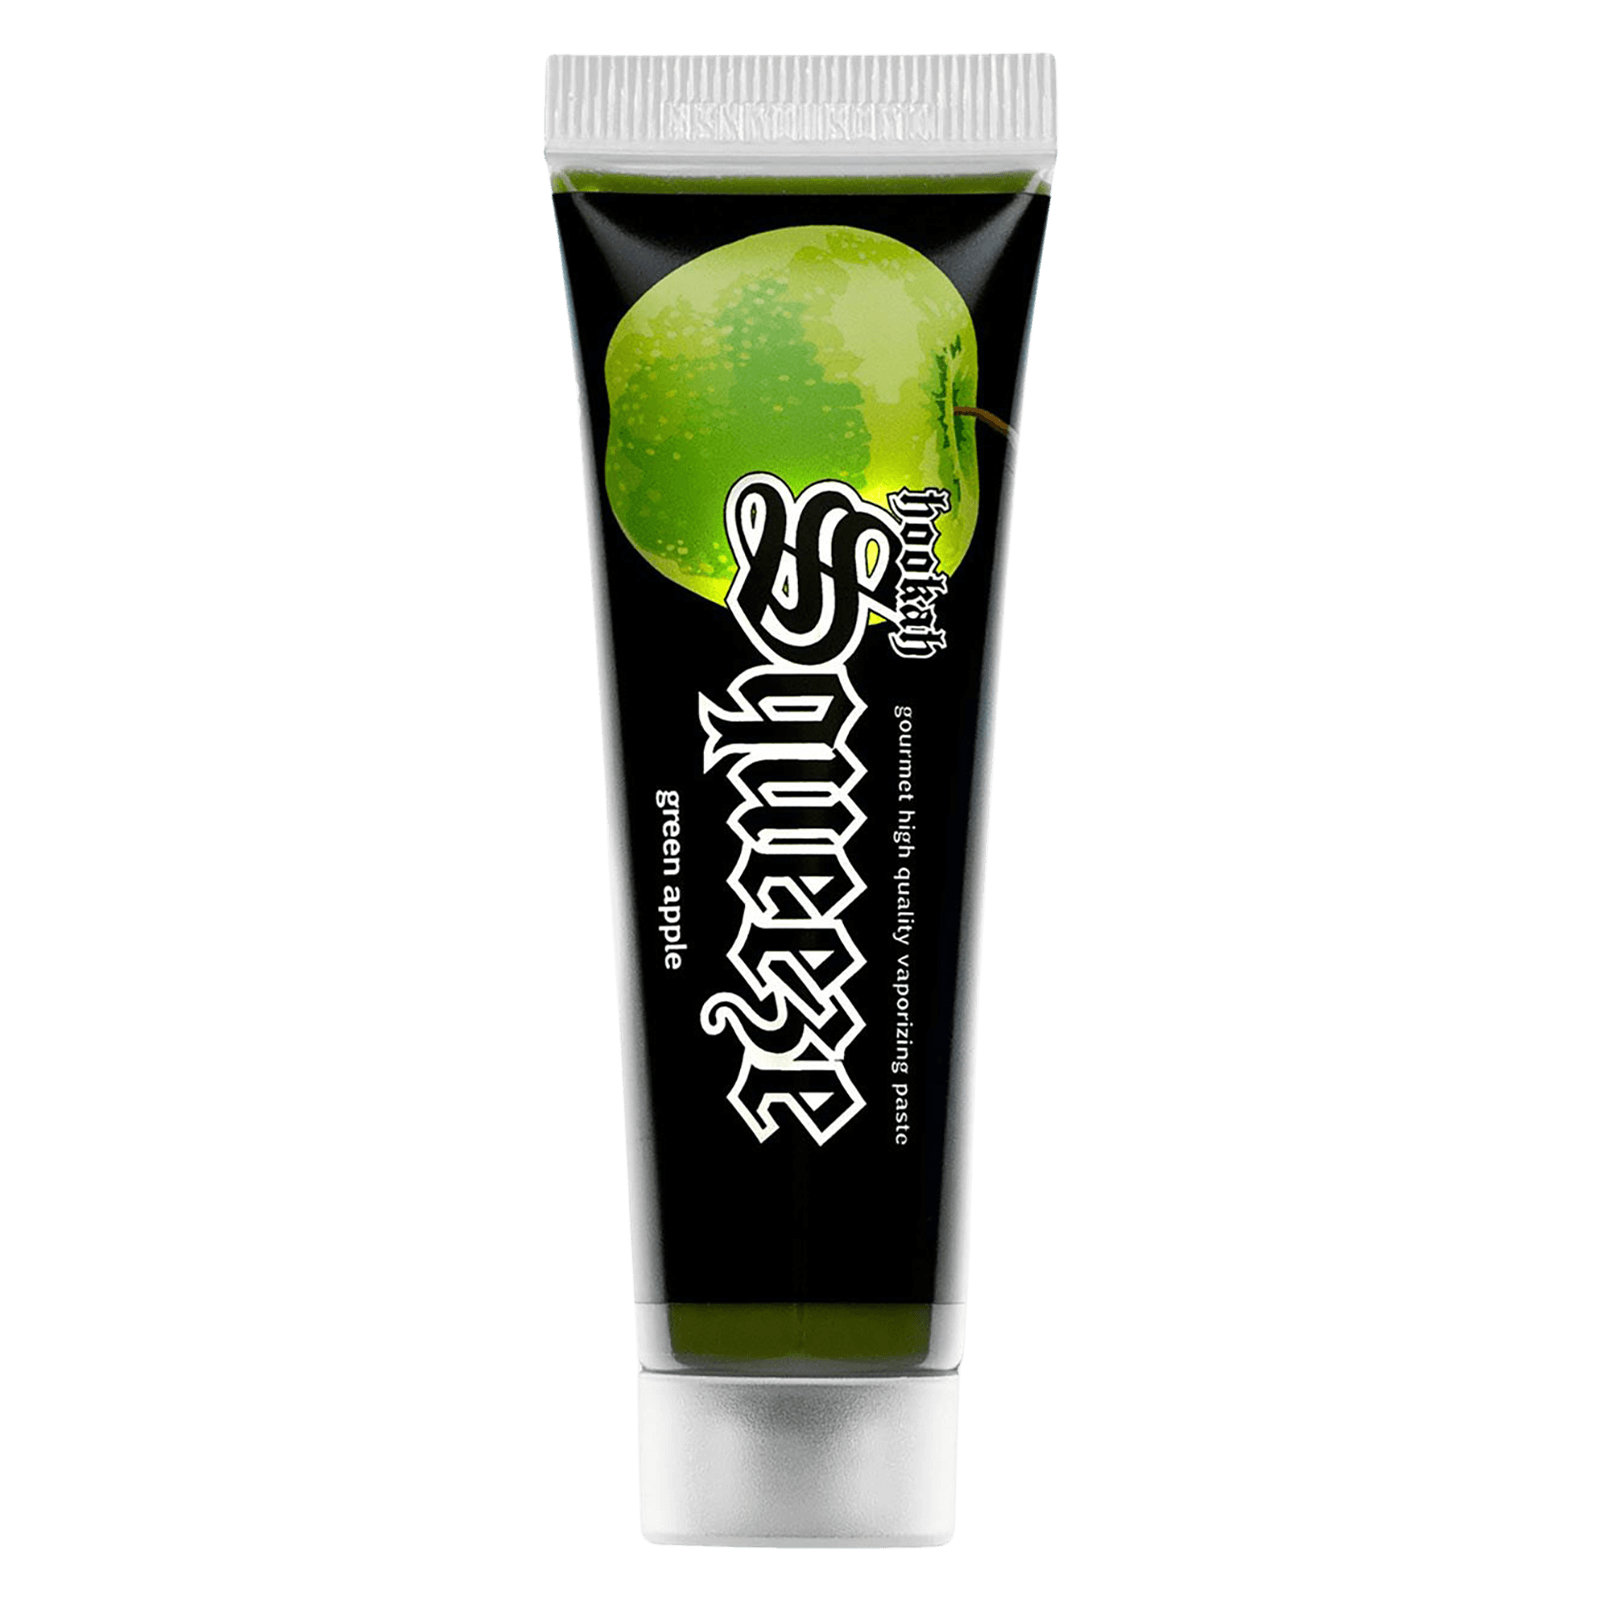 hookahSqueeze 25g - Green Apple